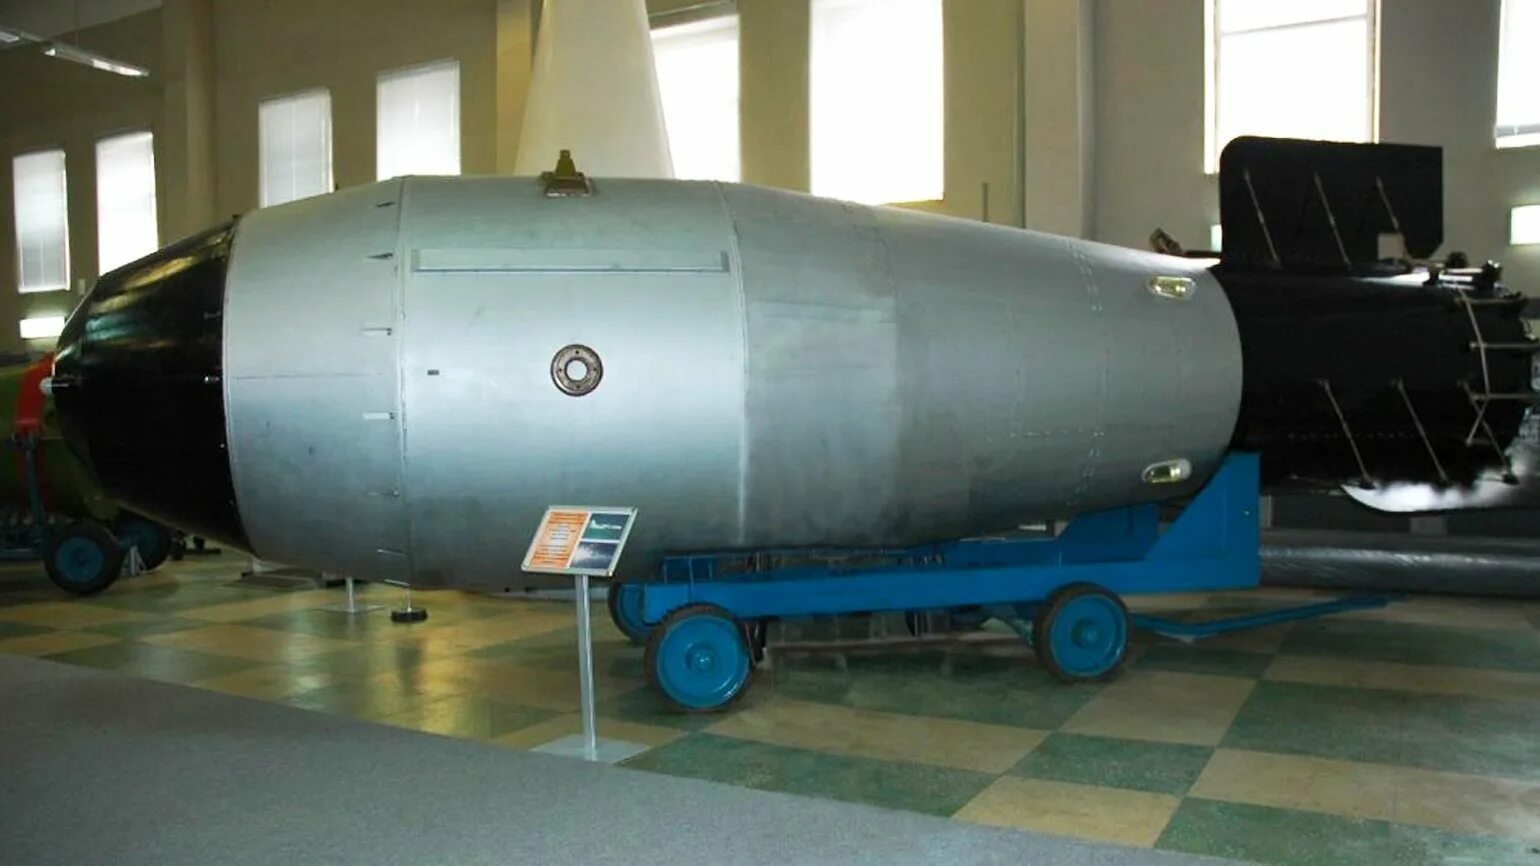 Водородная бомба в россии. Ан602 царь-бомба. Термоядерная бомб ан602 (царь-бомба). Царь бомба Саров. Термоядерная бомба ан602 ("Кузькина мать").